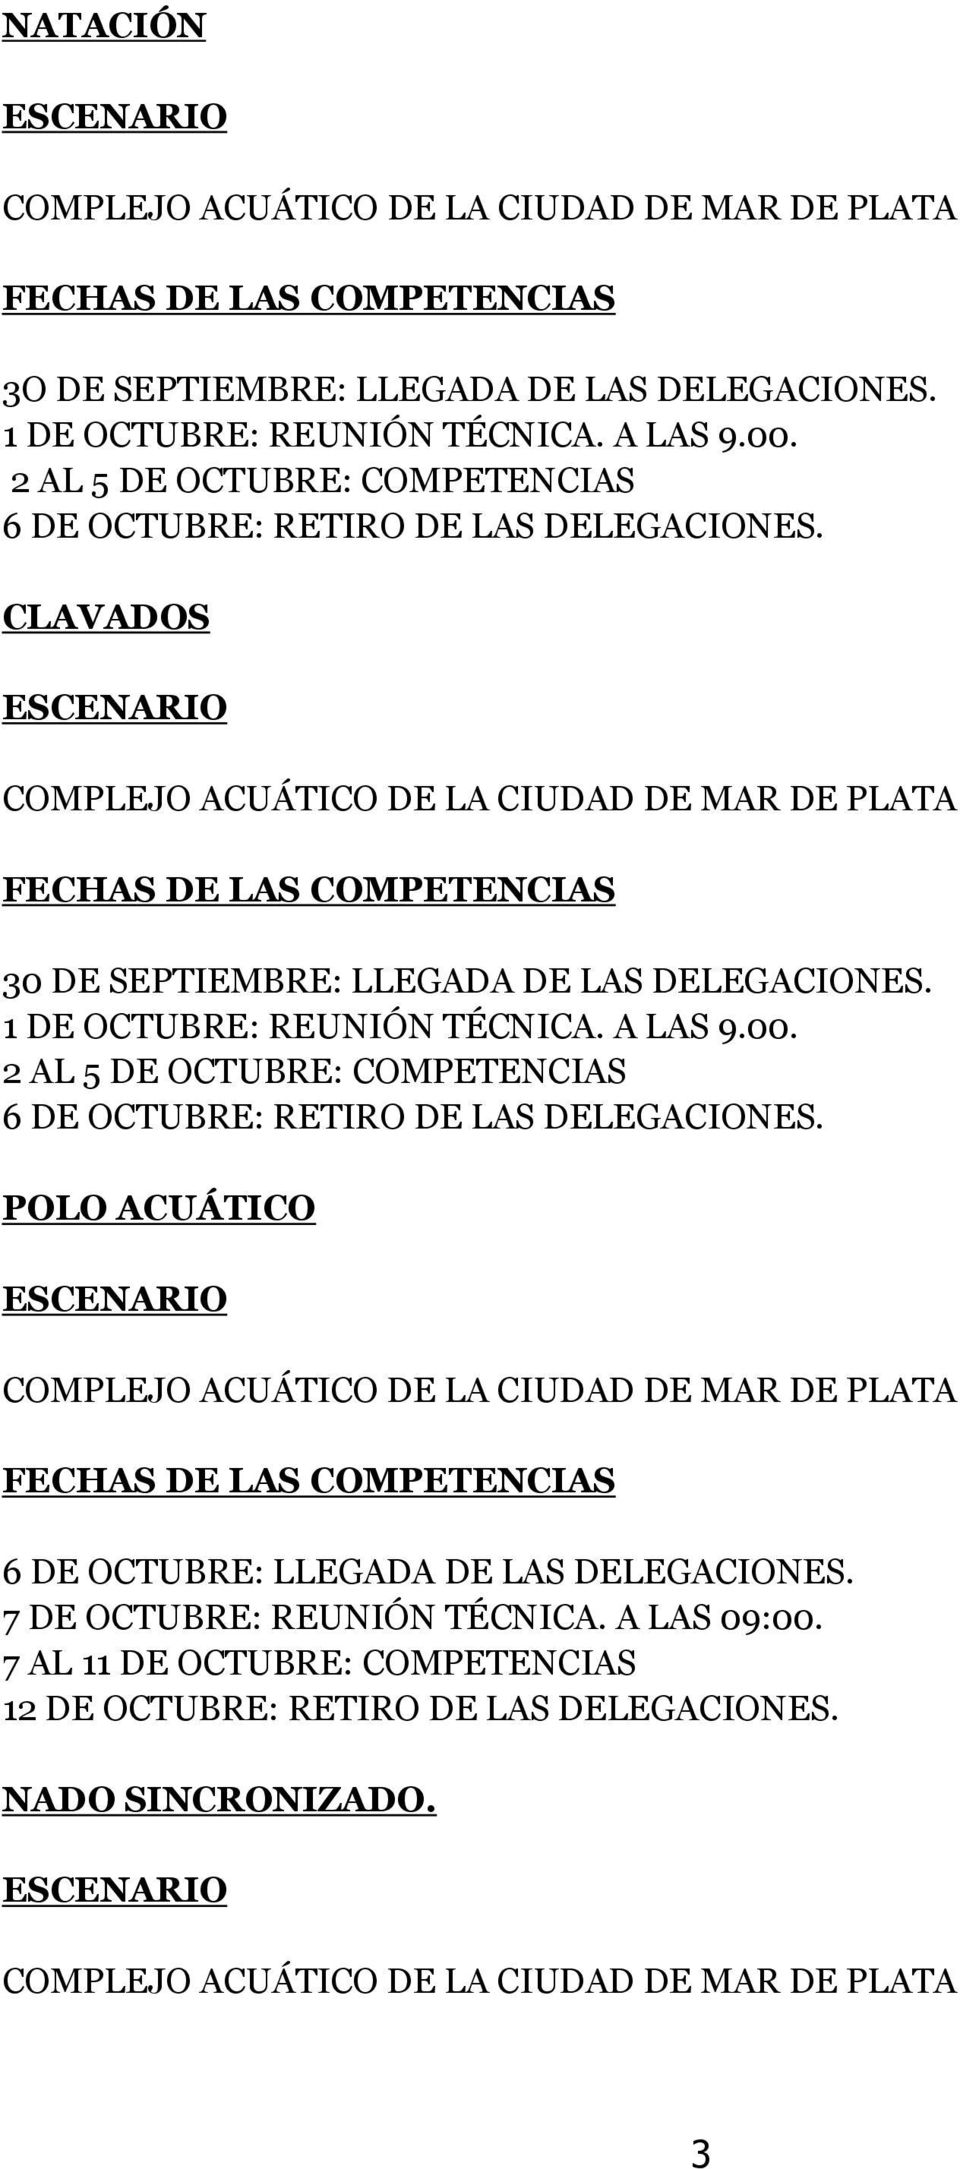 CLAVADOS COMPLEJO ACUÁTICO DE LA CIUDAD DE MAR DE PLATA FECHAS DE LAS COMPETENCIAS 30 DE SEPTIEMBRE: LLEGADA DE LAS DELEGACIONES. 1 DE OCTUBRE: REUNIÓN TÉCNICA. A LAS 9.00.